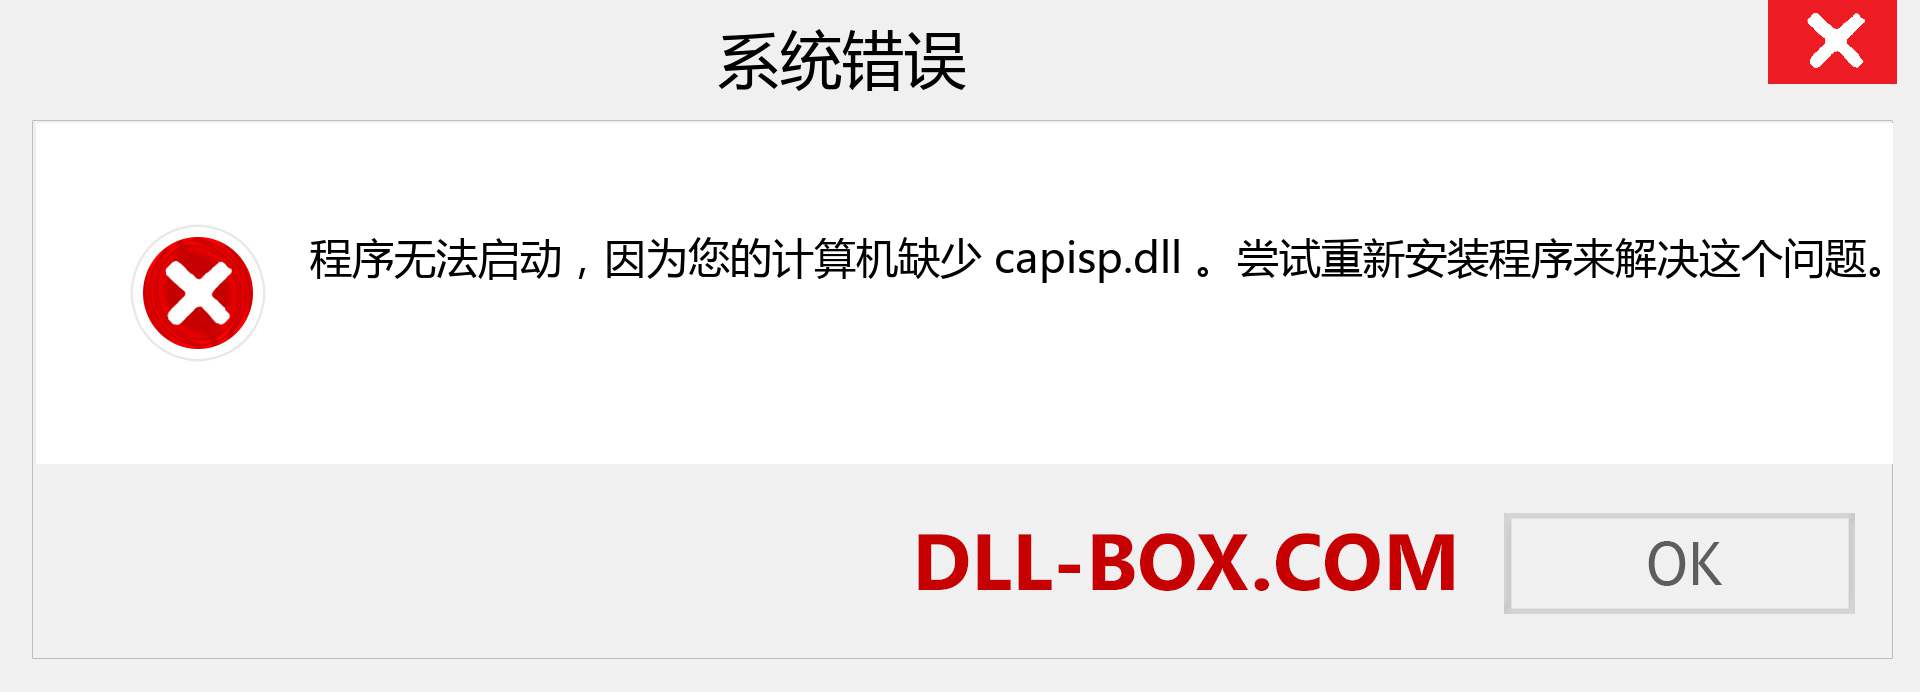 capisp.dll 文件丢失？。 适用于 Windows 7、8、10 的下载 - 修复 Windows、照片、图像上的 capisp dll 丢失错误